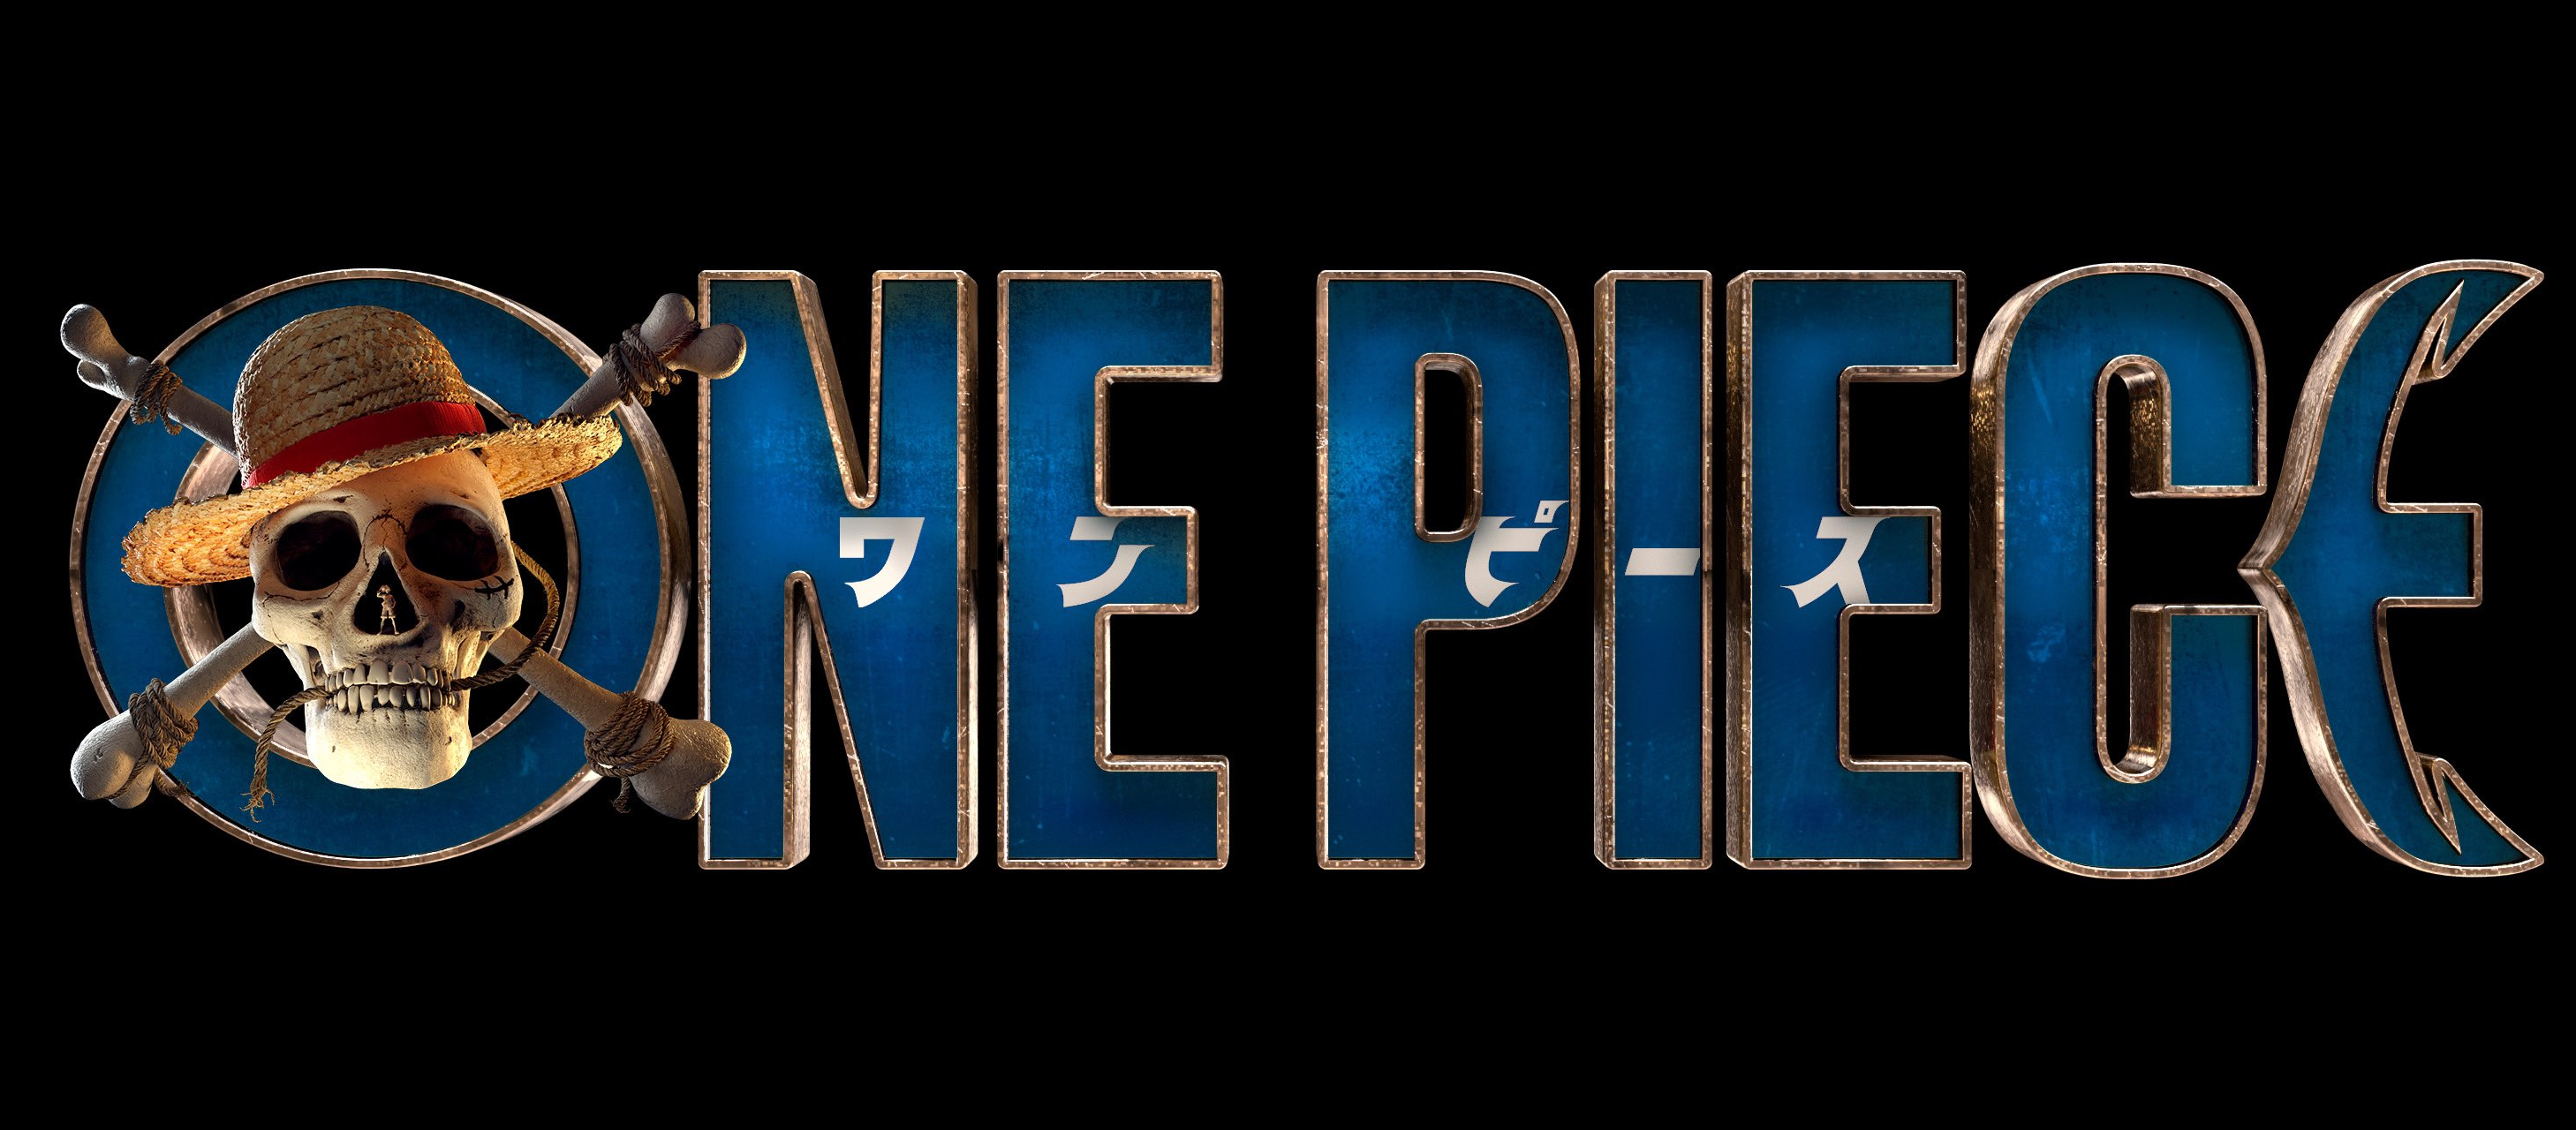 Tóm tắt One Piece cụ thể theo từng season trong anime - POPS Blog